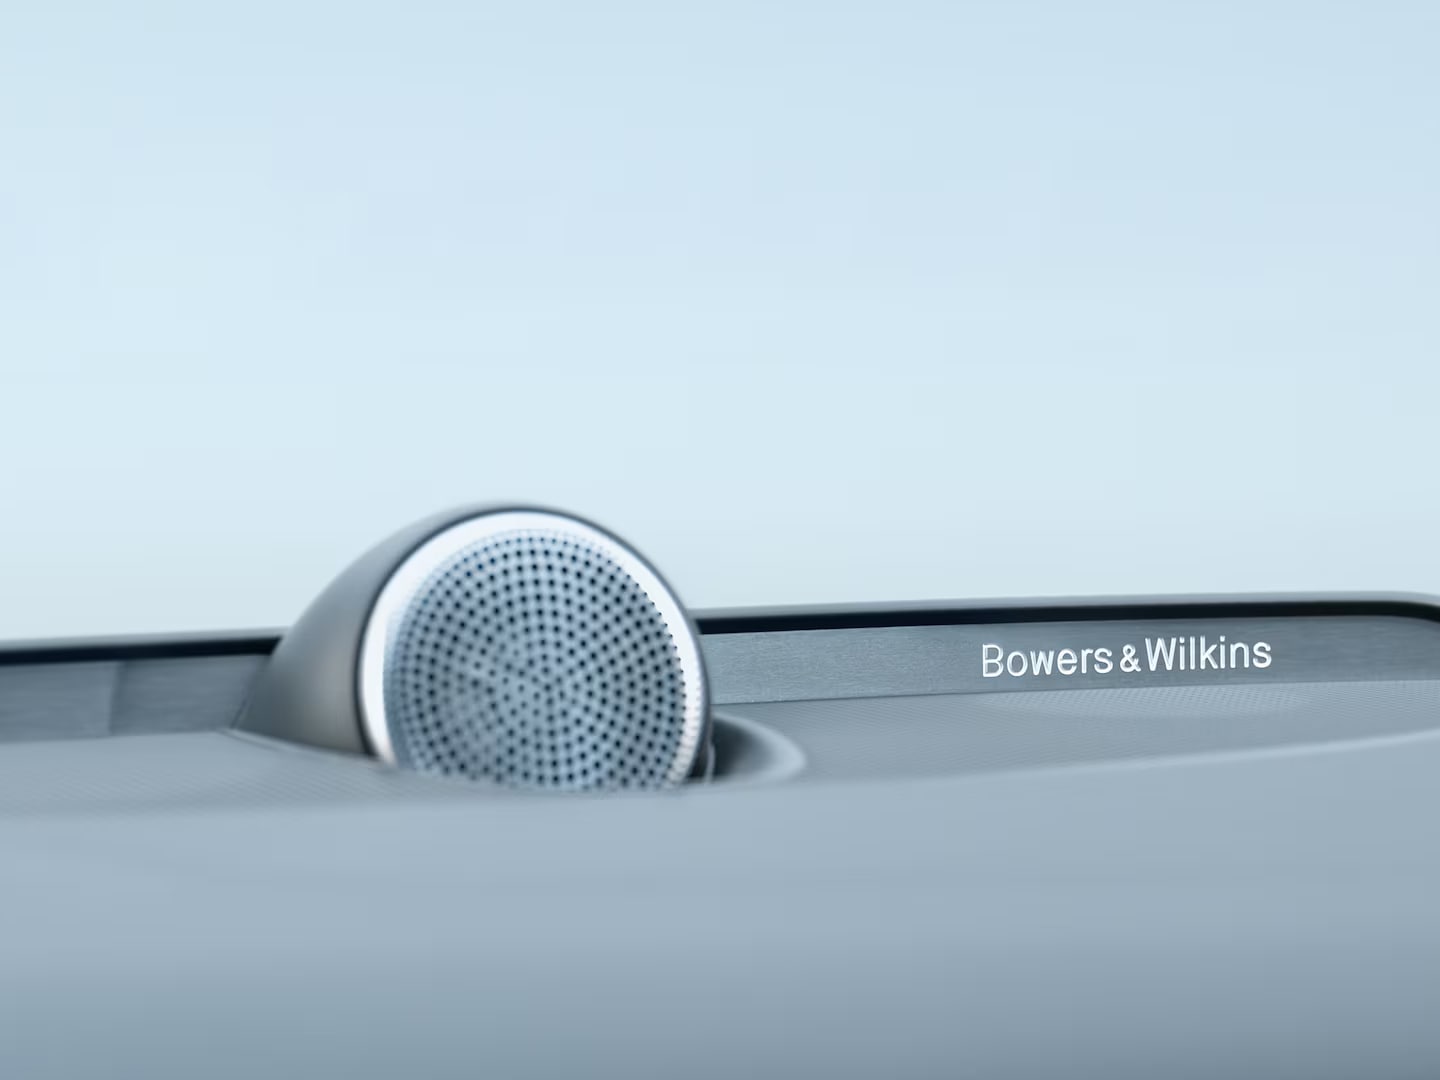 صورة مقربة لمكبر الصوت Bowers &Wilkins في لوحة القيادة Bowers & Wilkins في فولفو S60 الهجينة بالطاقة المساعدة.